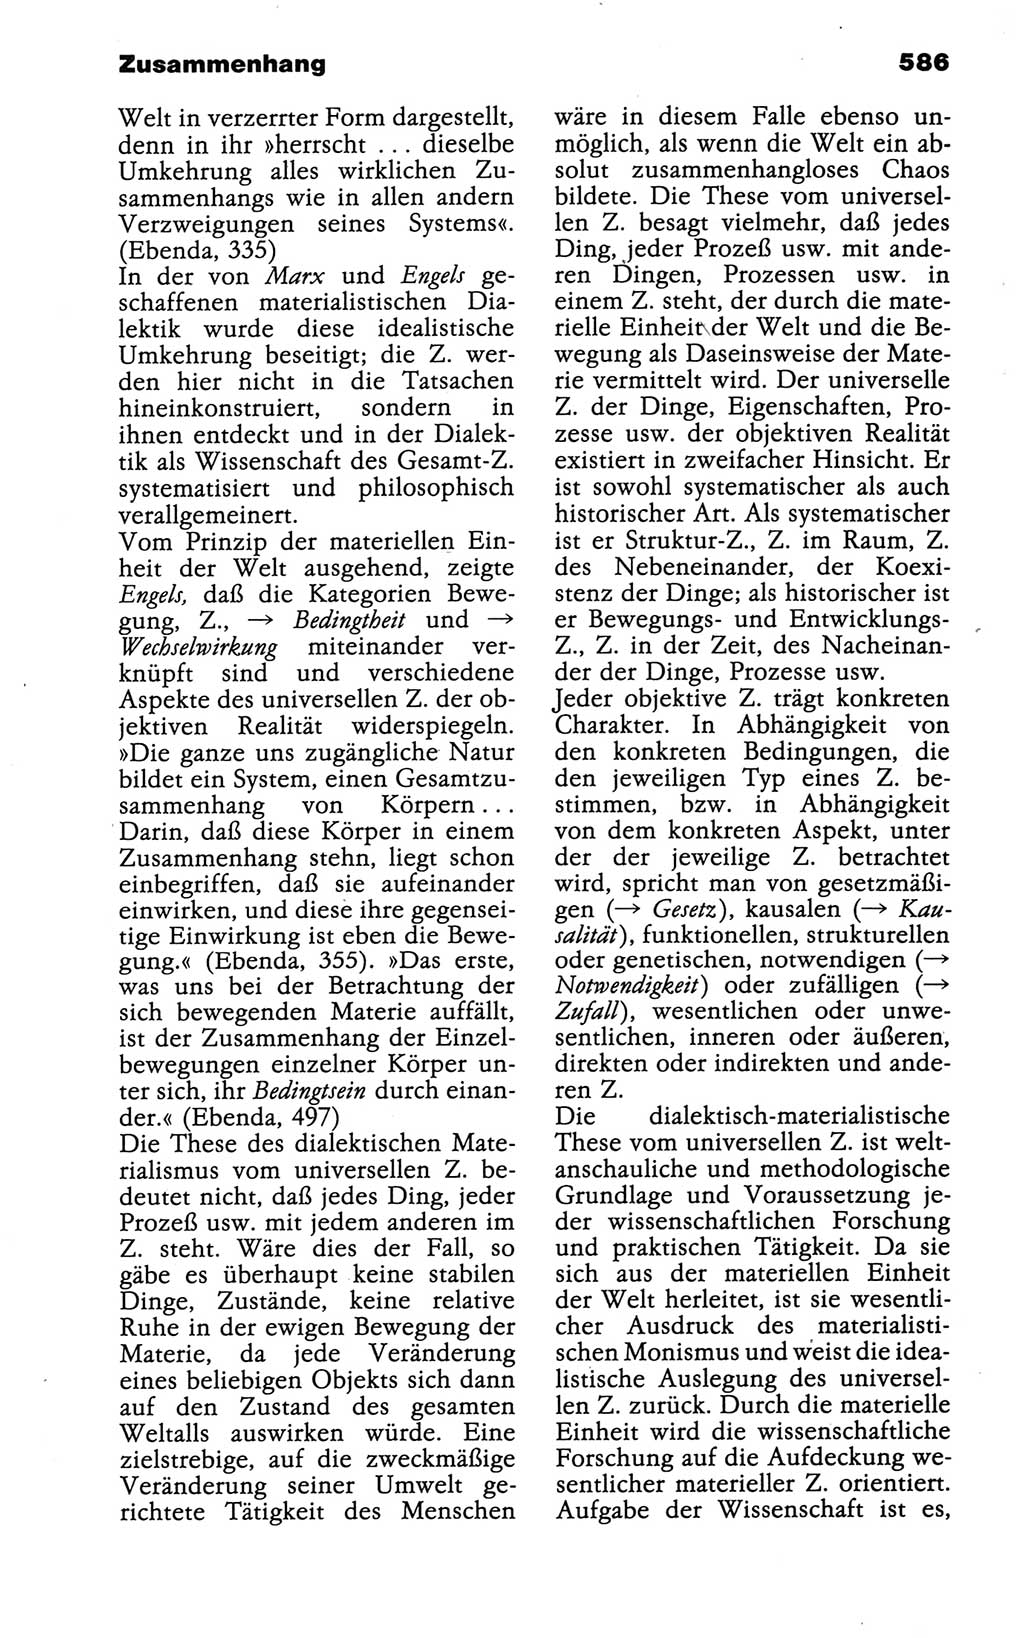 Wörterbuch der marxistisch-leninistischen Philosophie [Deutsche Demokratische Republik (DDR)] 1986, Seite 586 (Wb. ML Phil. DDR 1986, S. 586)